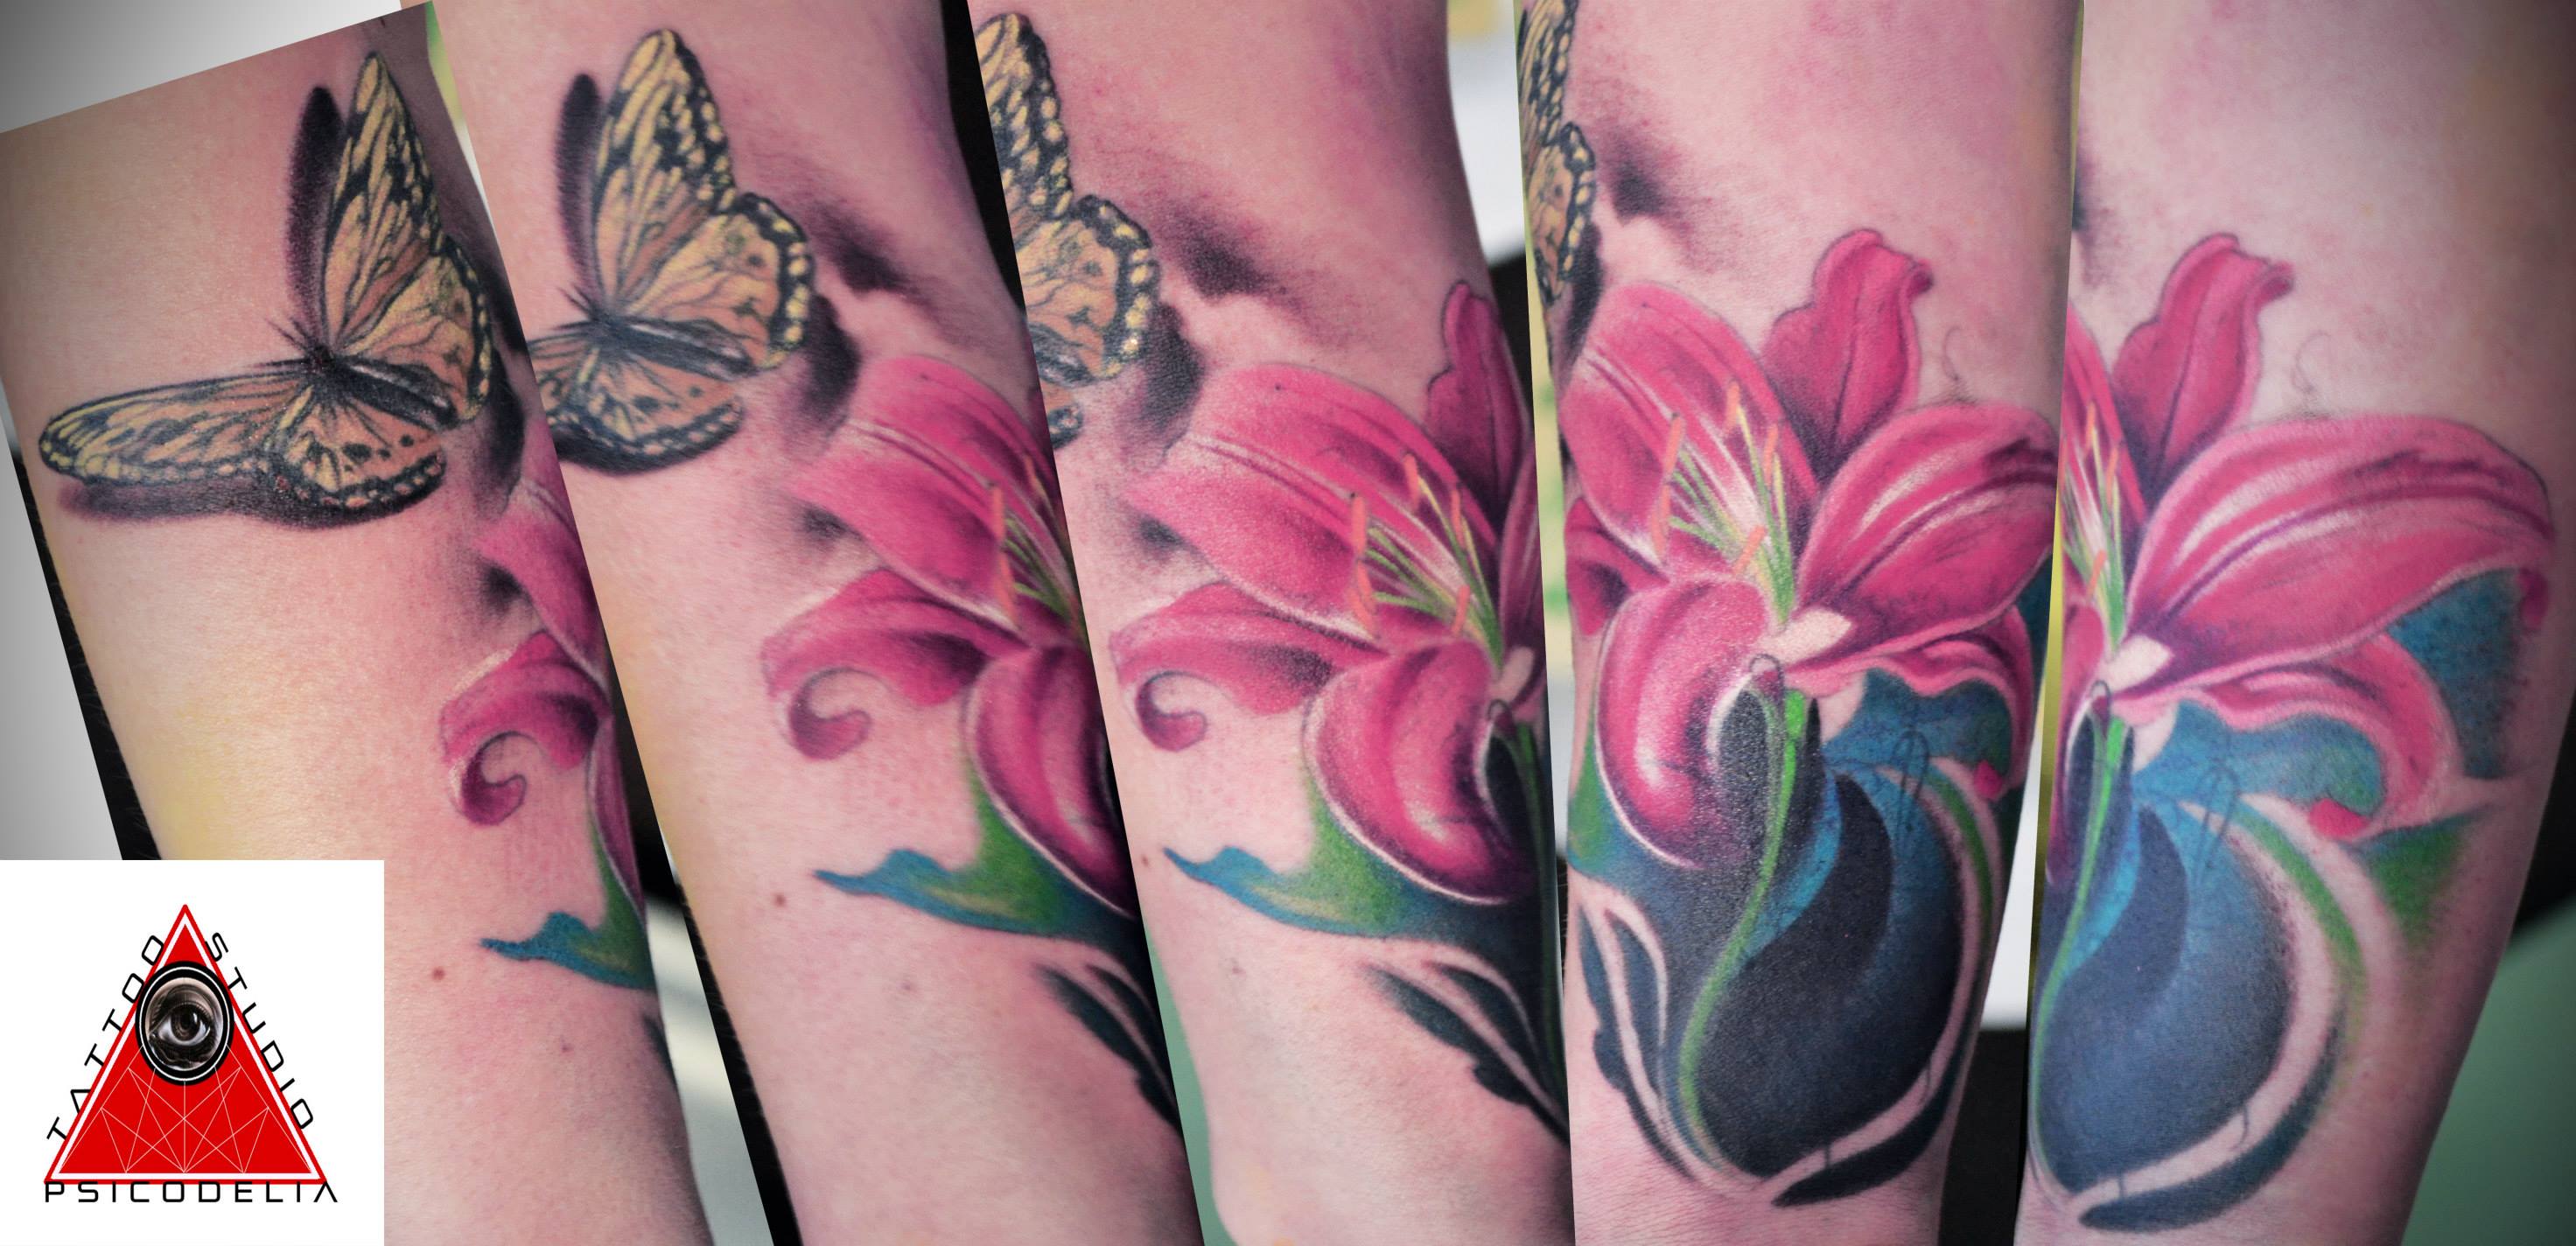 Tatuaje de una flor y una mariposa